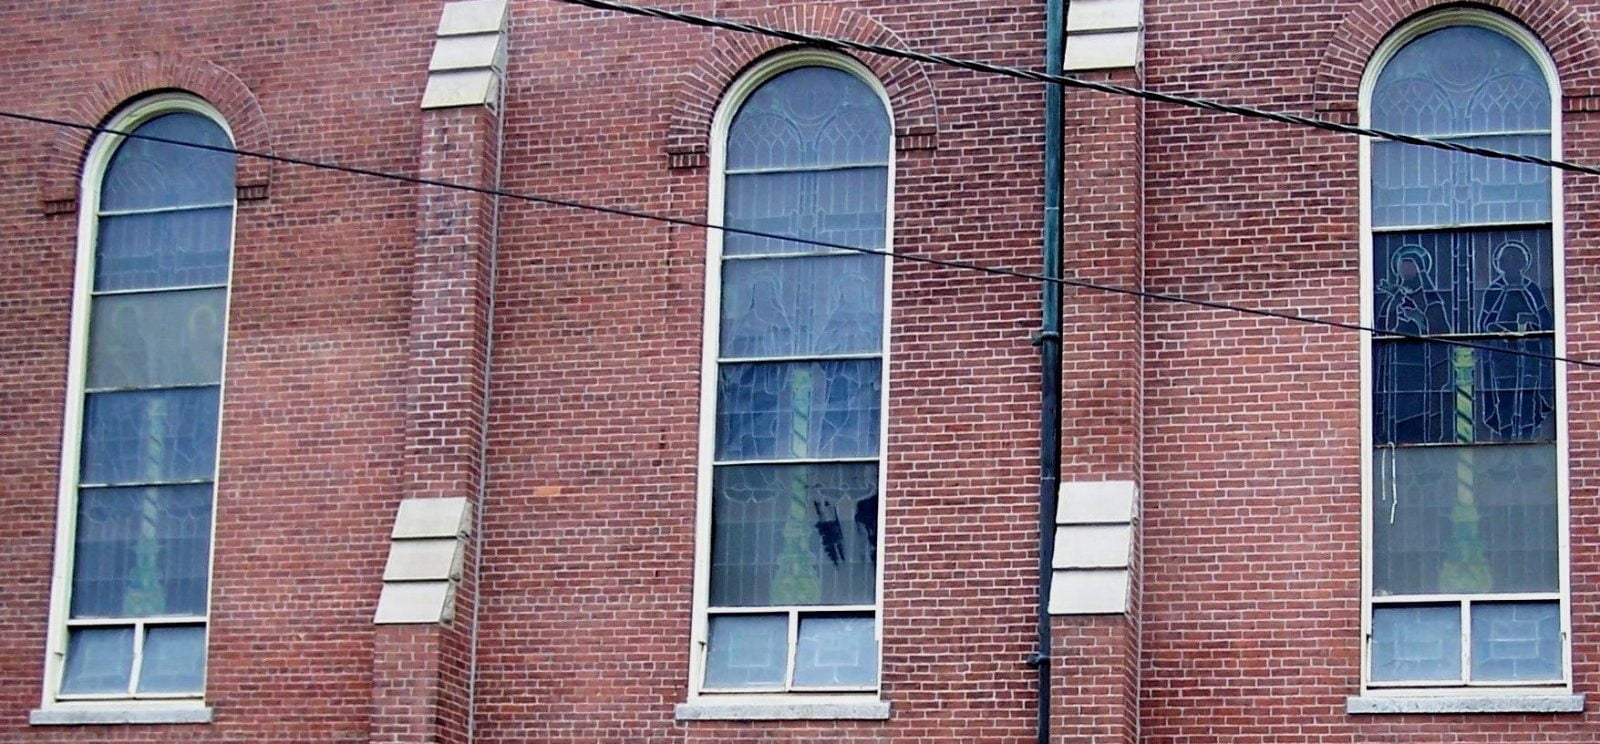 church stained glass, church stained glass windows, church stained glass window protective coverings